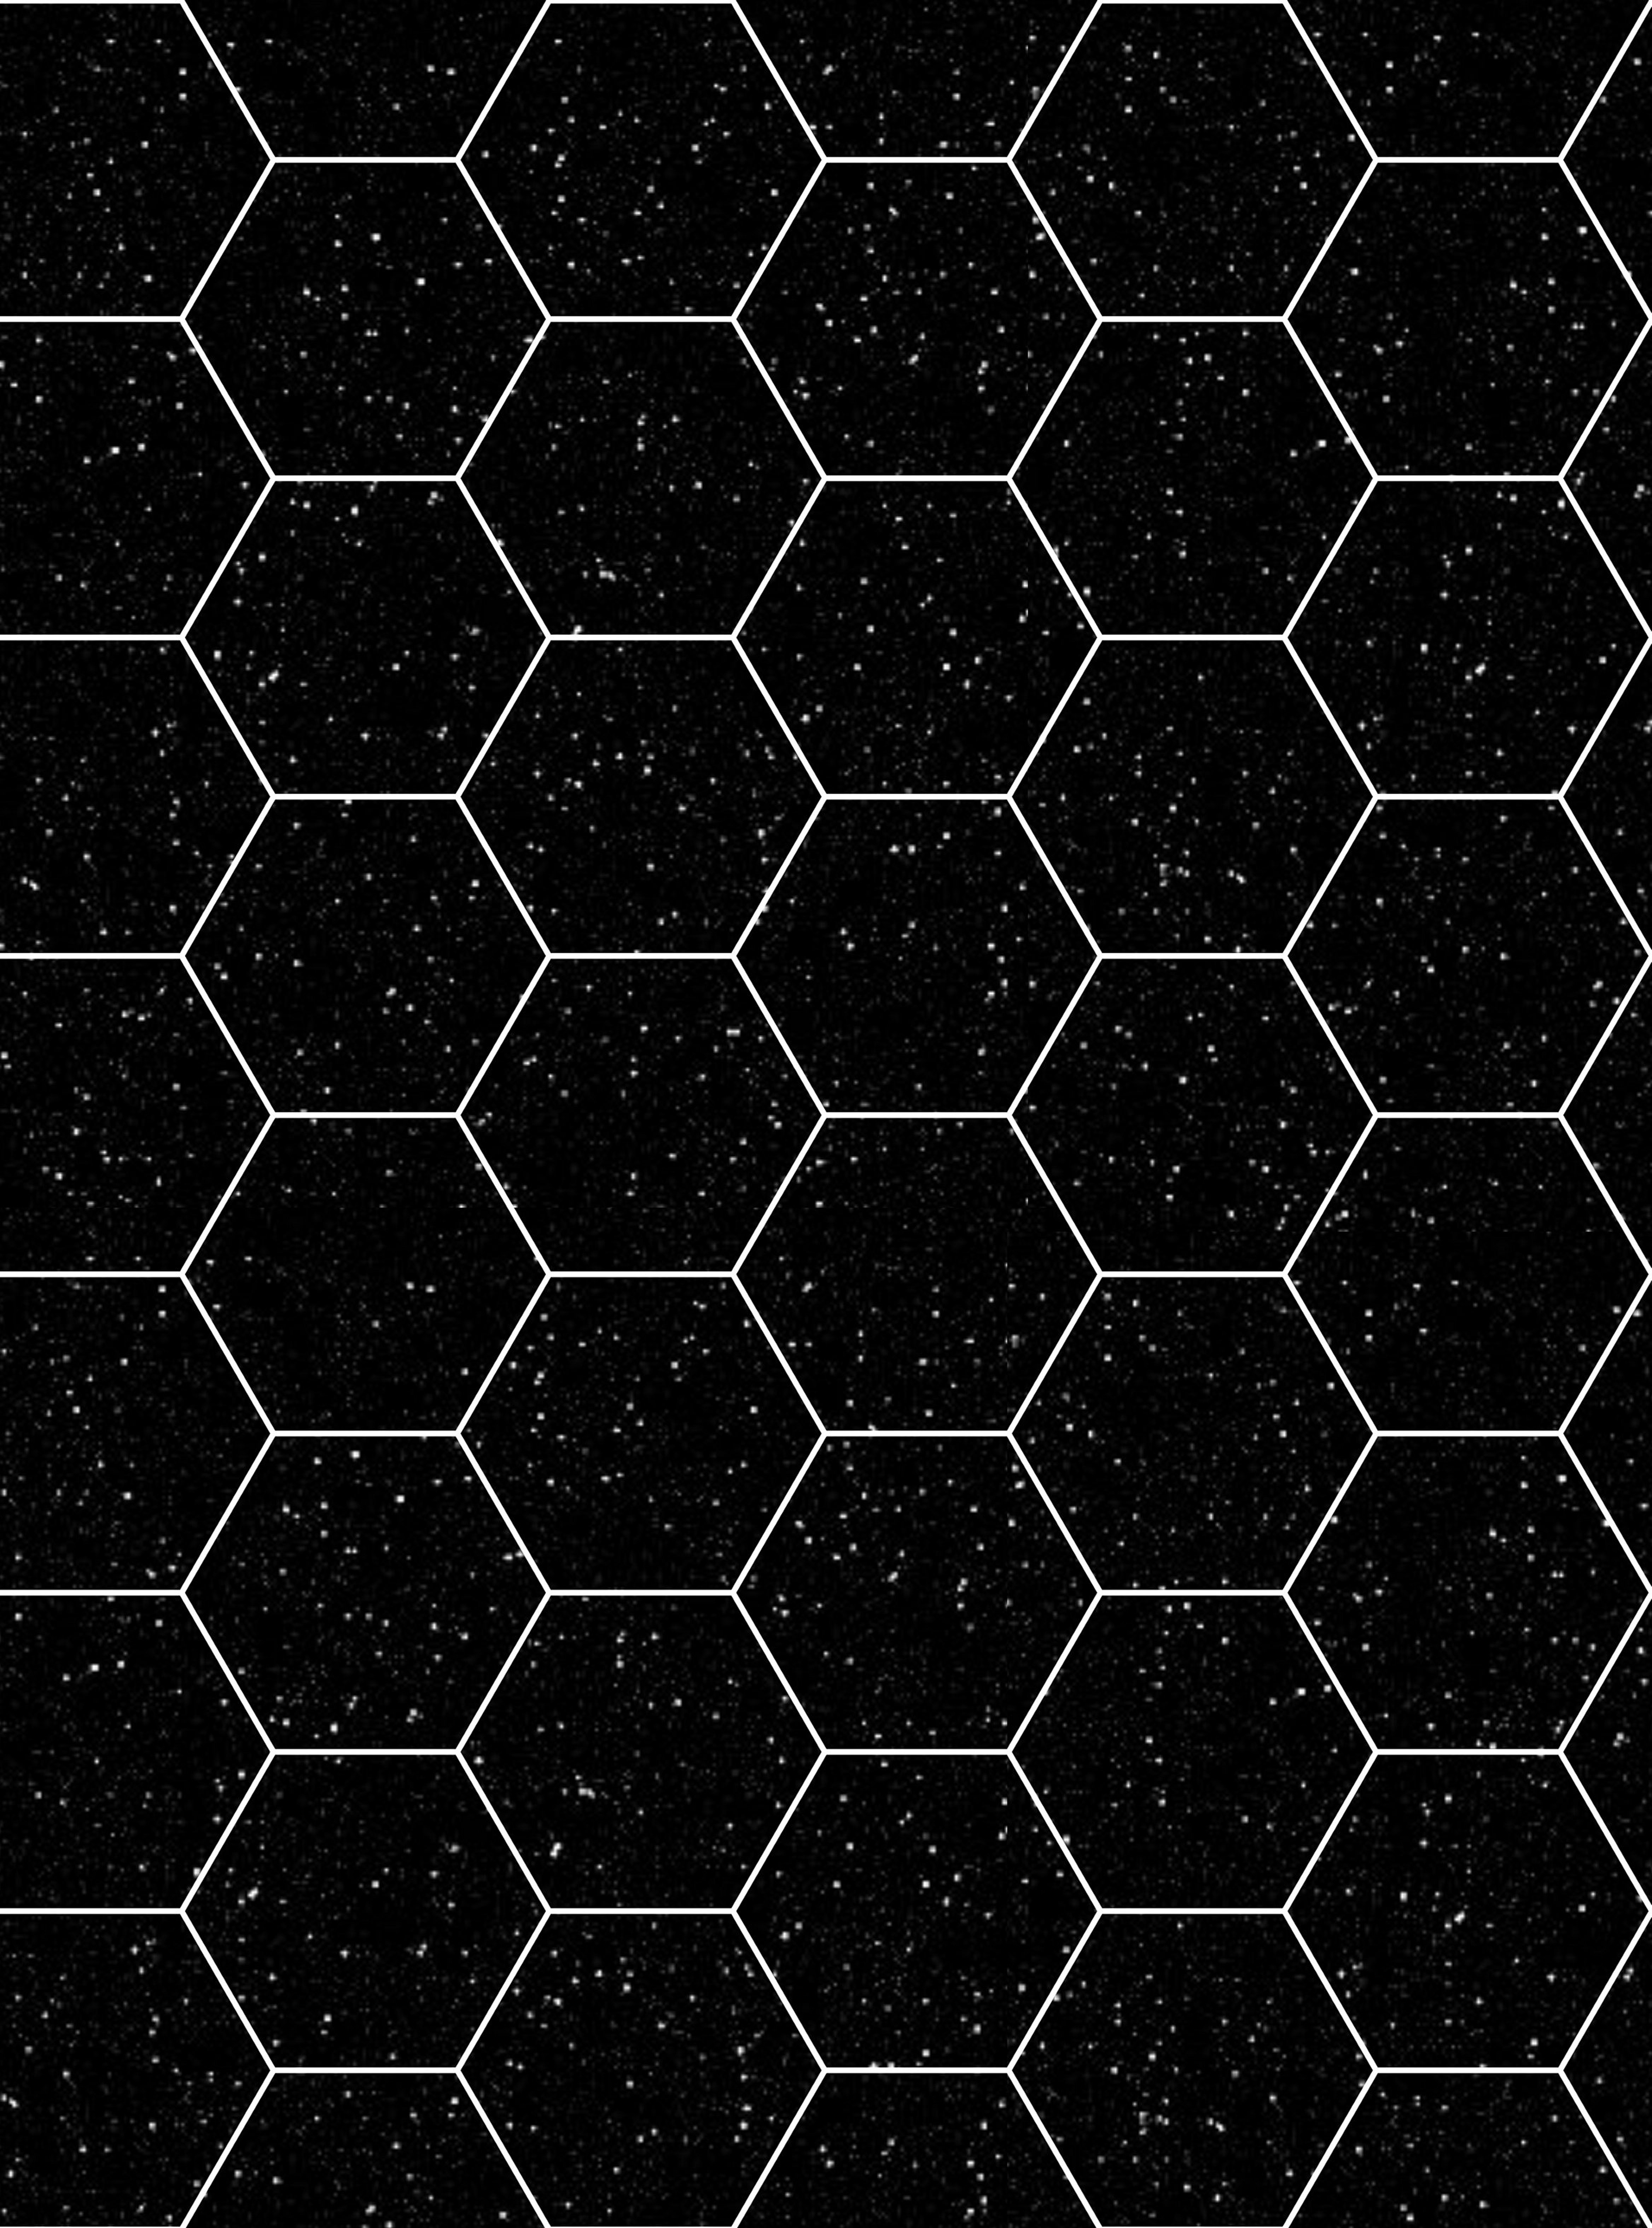 Hexagon+grid+vector